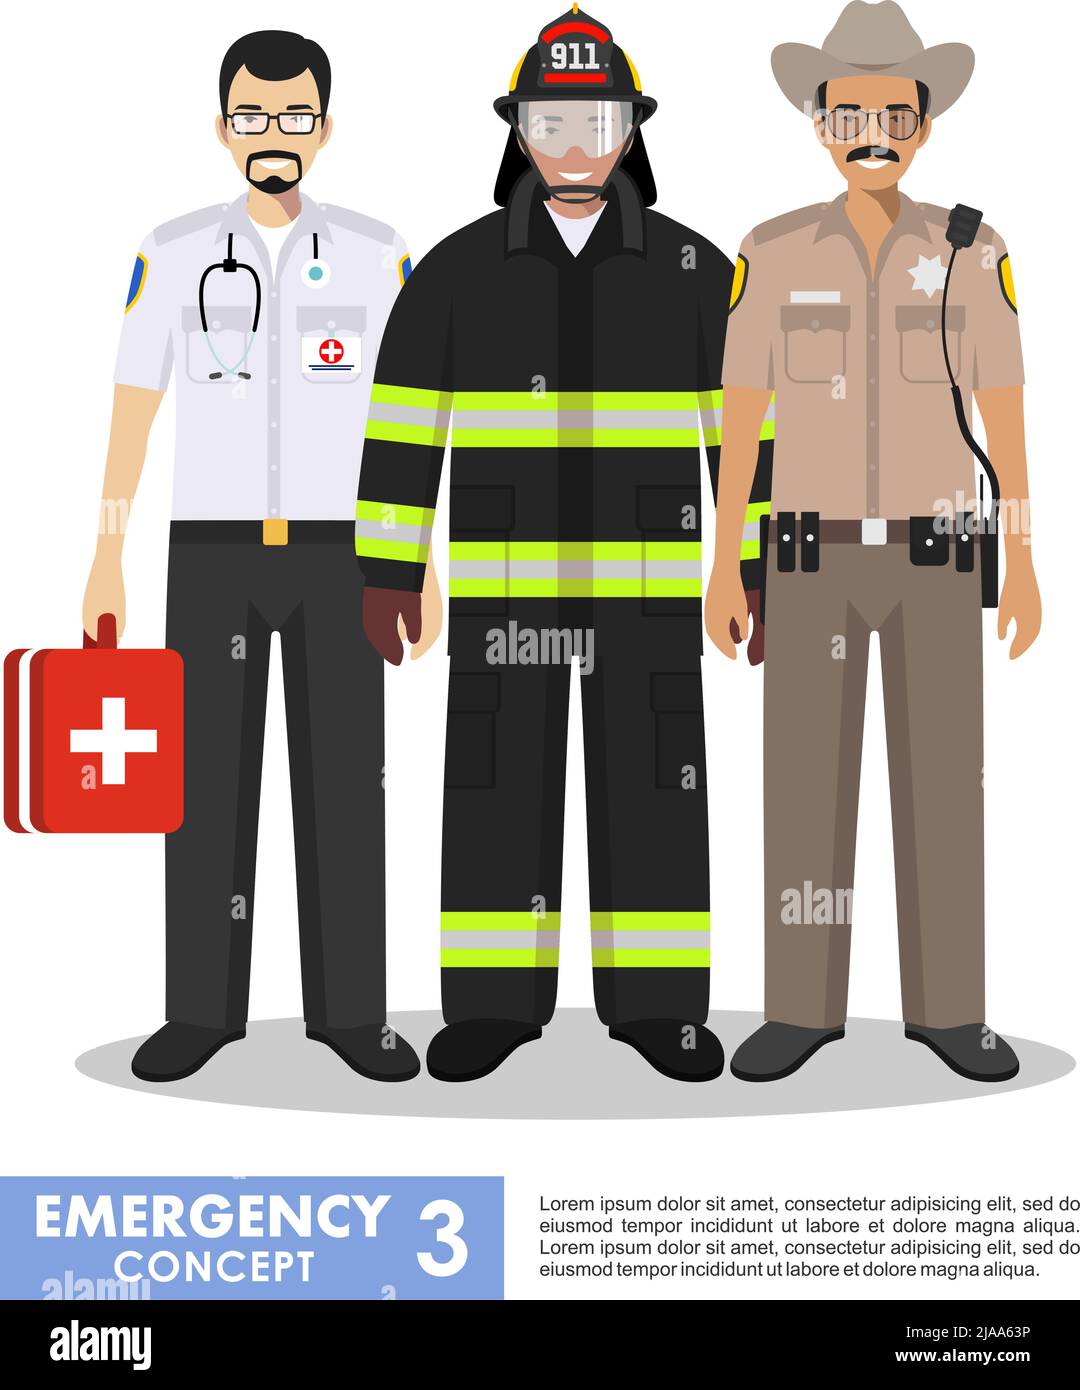 Illustration détaillée d'un pompier, d'un médecin urgentiste, d'un policier en uniforme debout ensemble dans un style plat sur fond blanc. Illustration de Vecteur